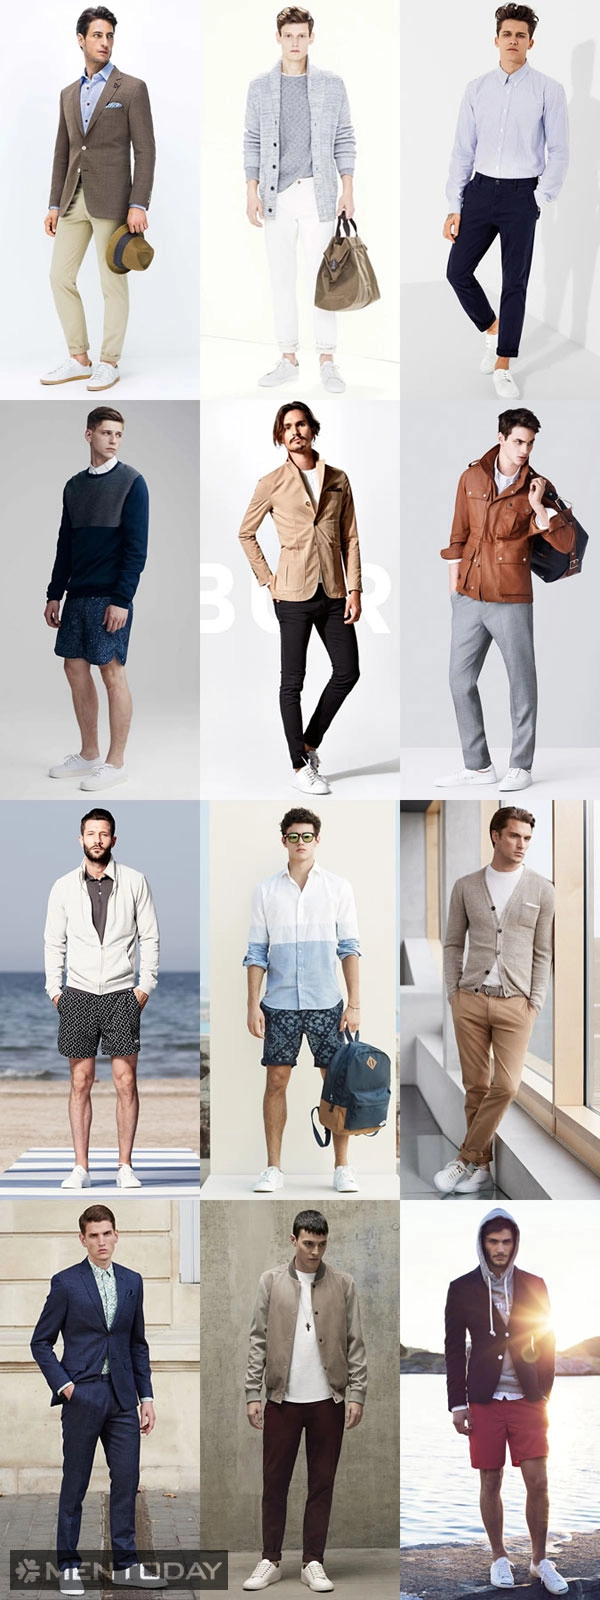 Xu hướng thời trang nam xuân hè 2015 4 items chính - 5